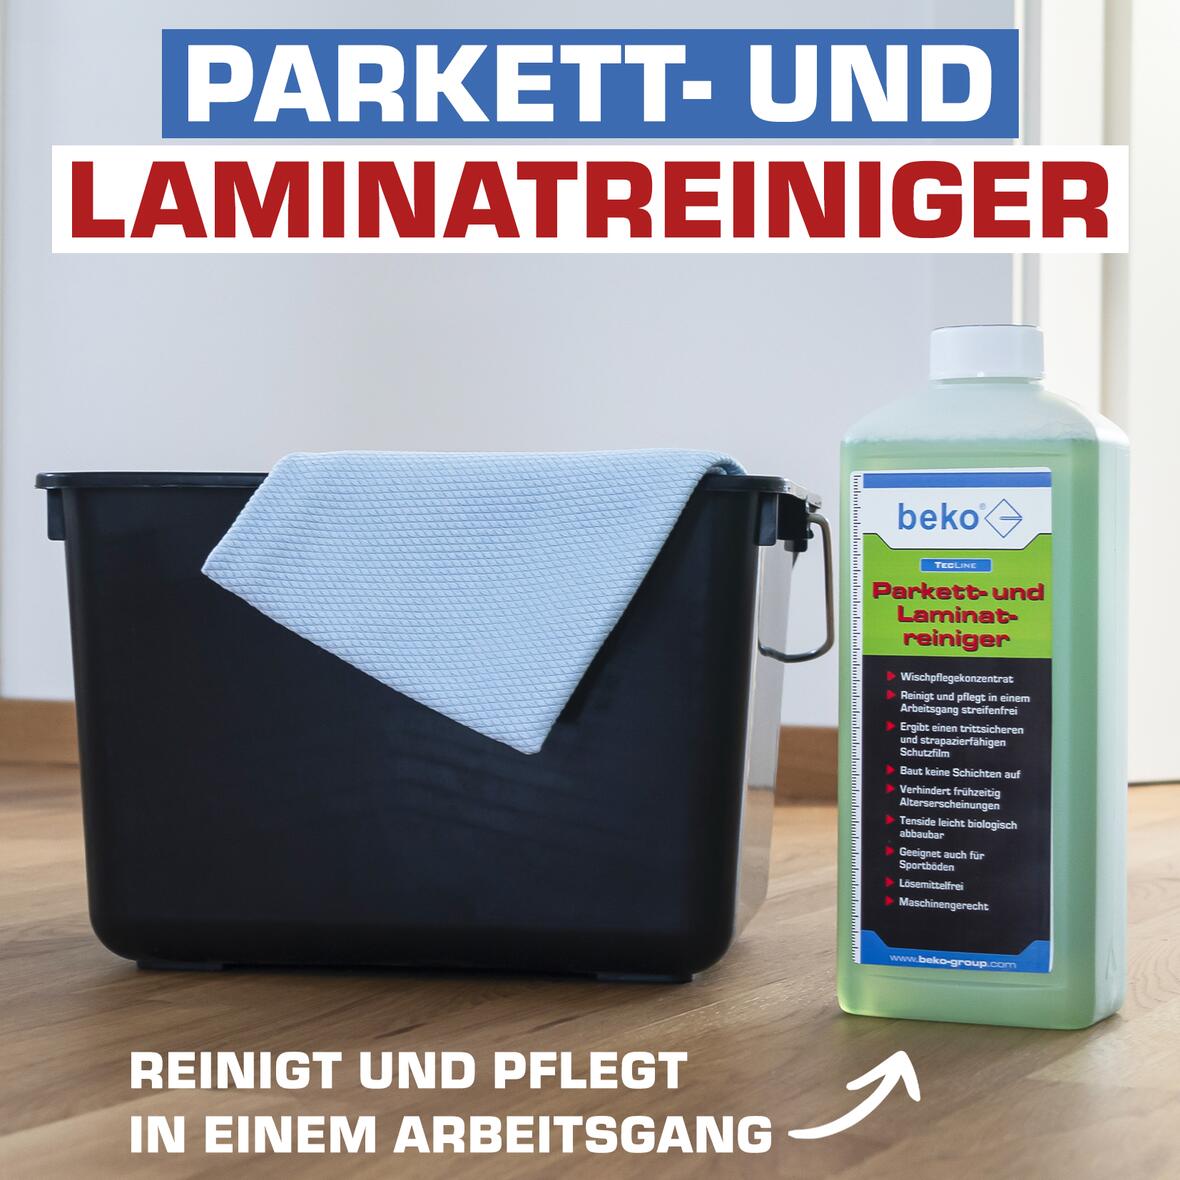 parkett-laminatreiniger